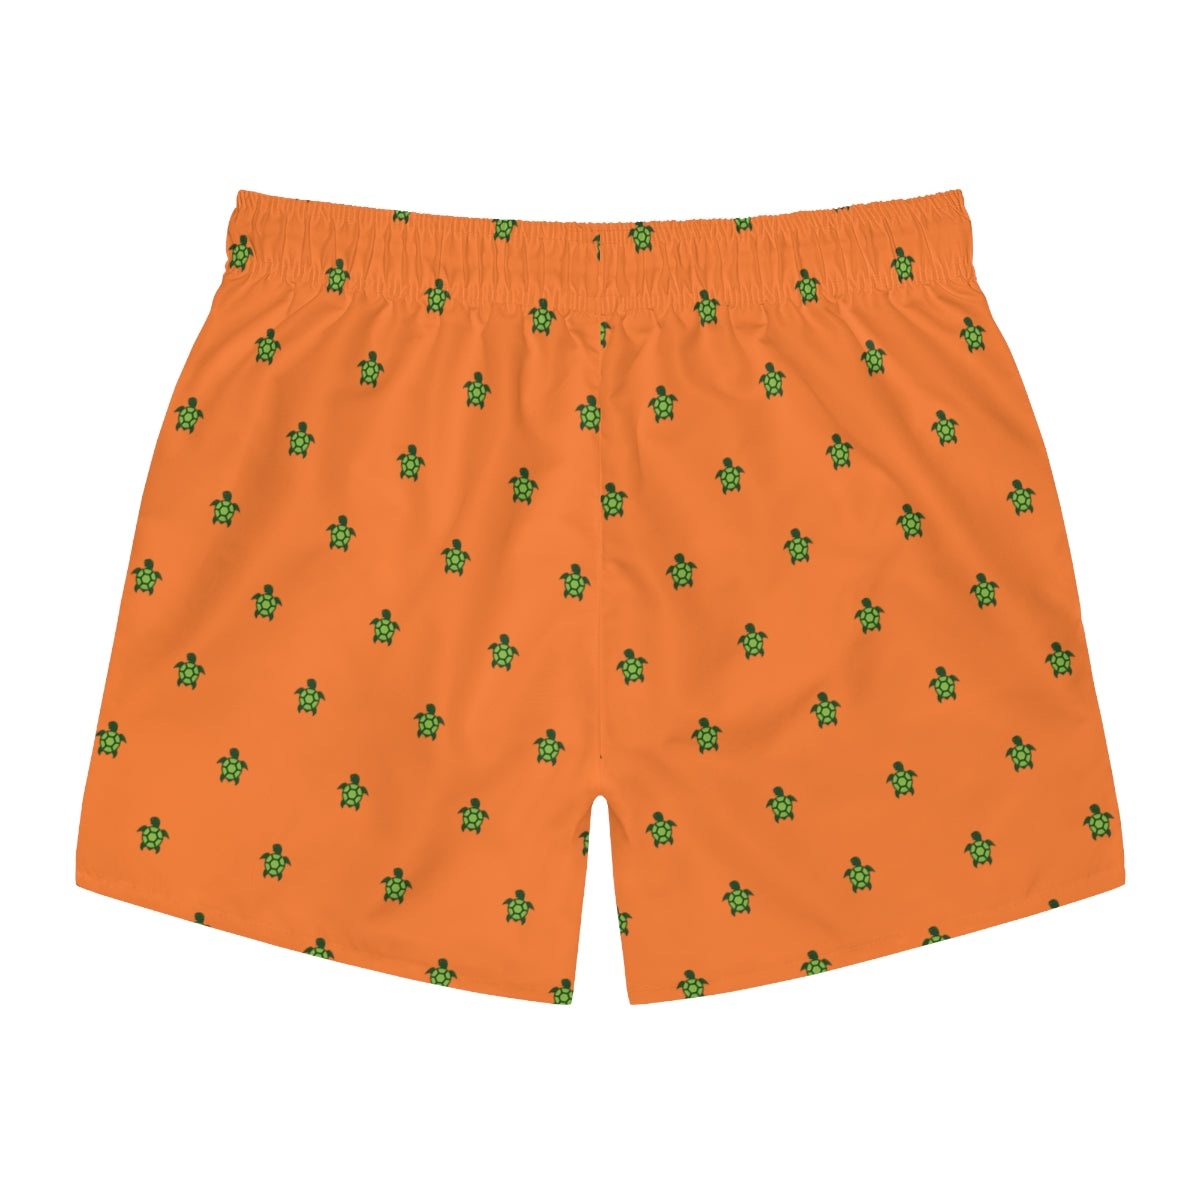 Orange Turtlez Swim Trunks